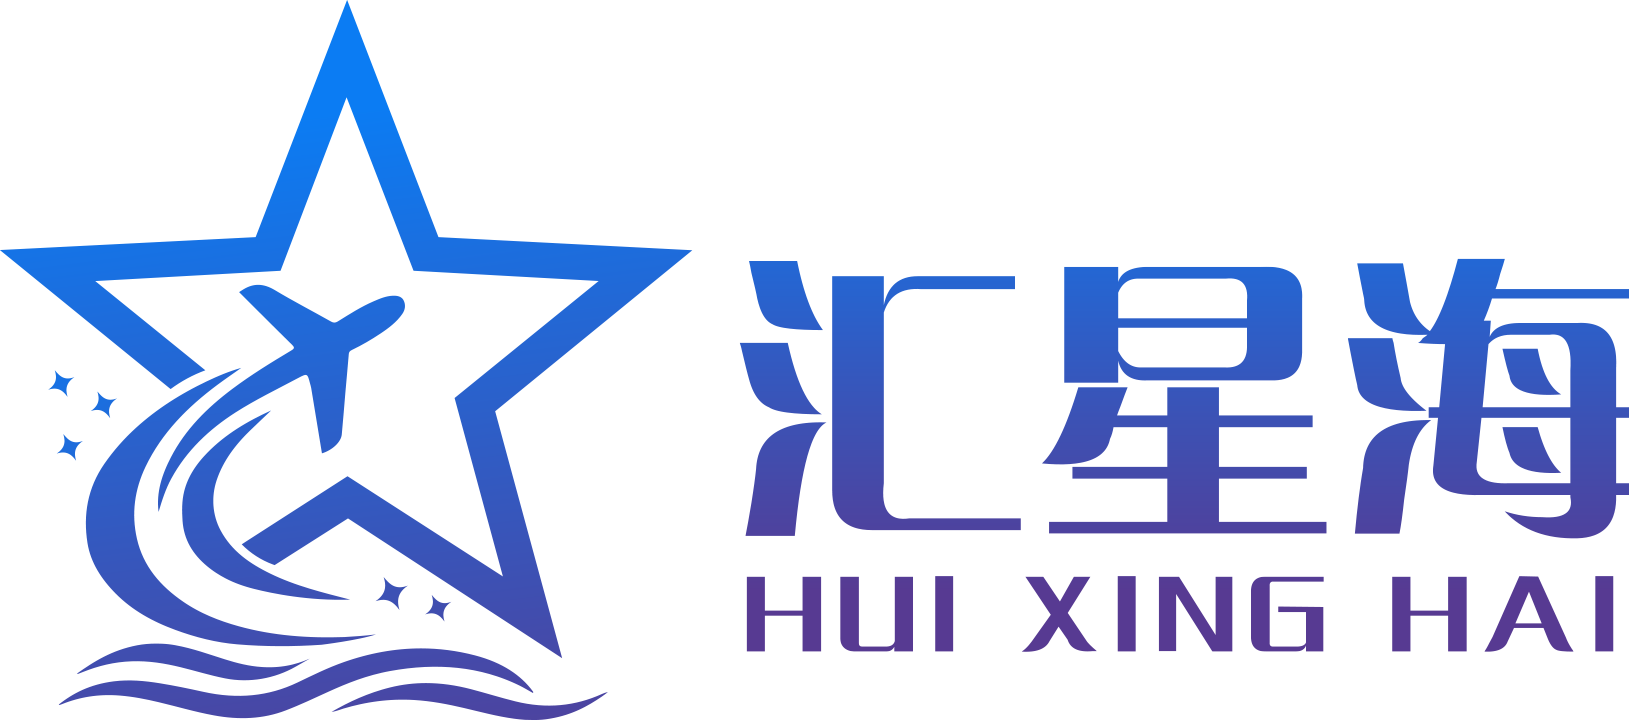 汇星海logo.png